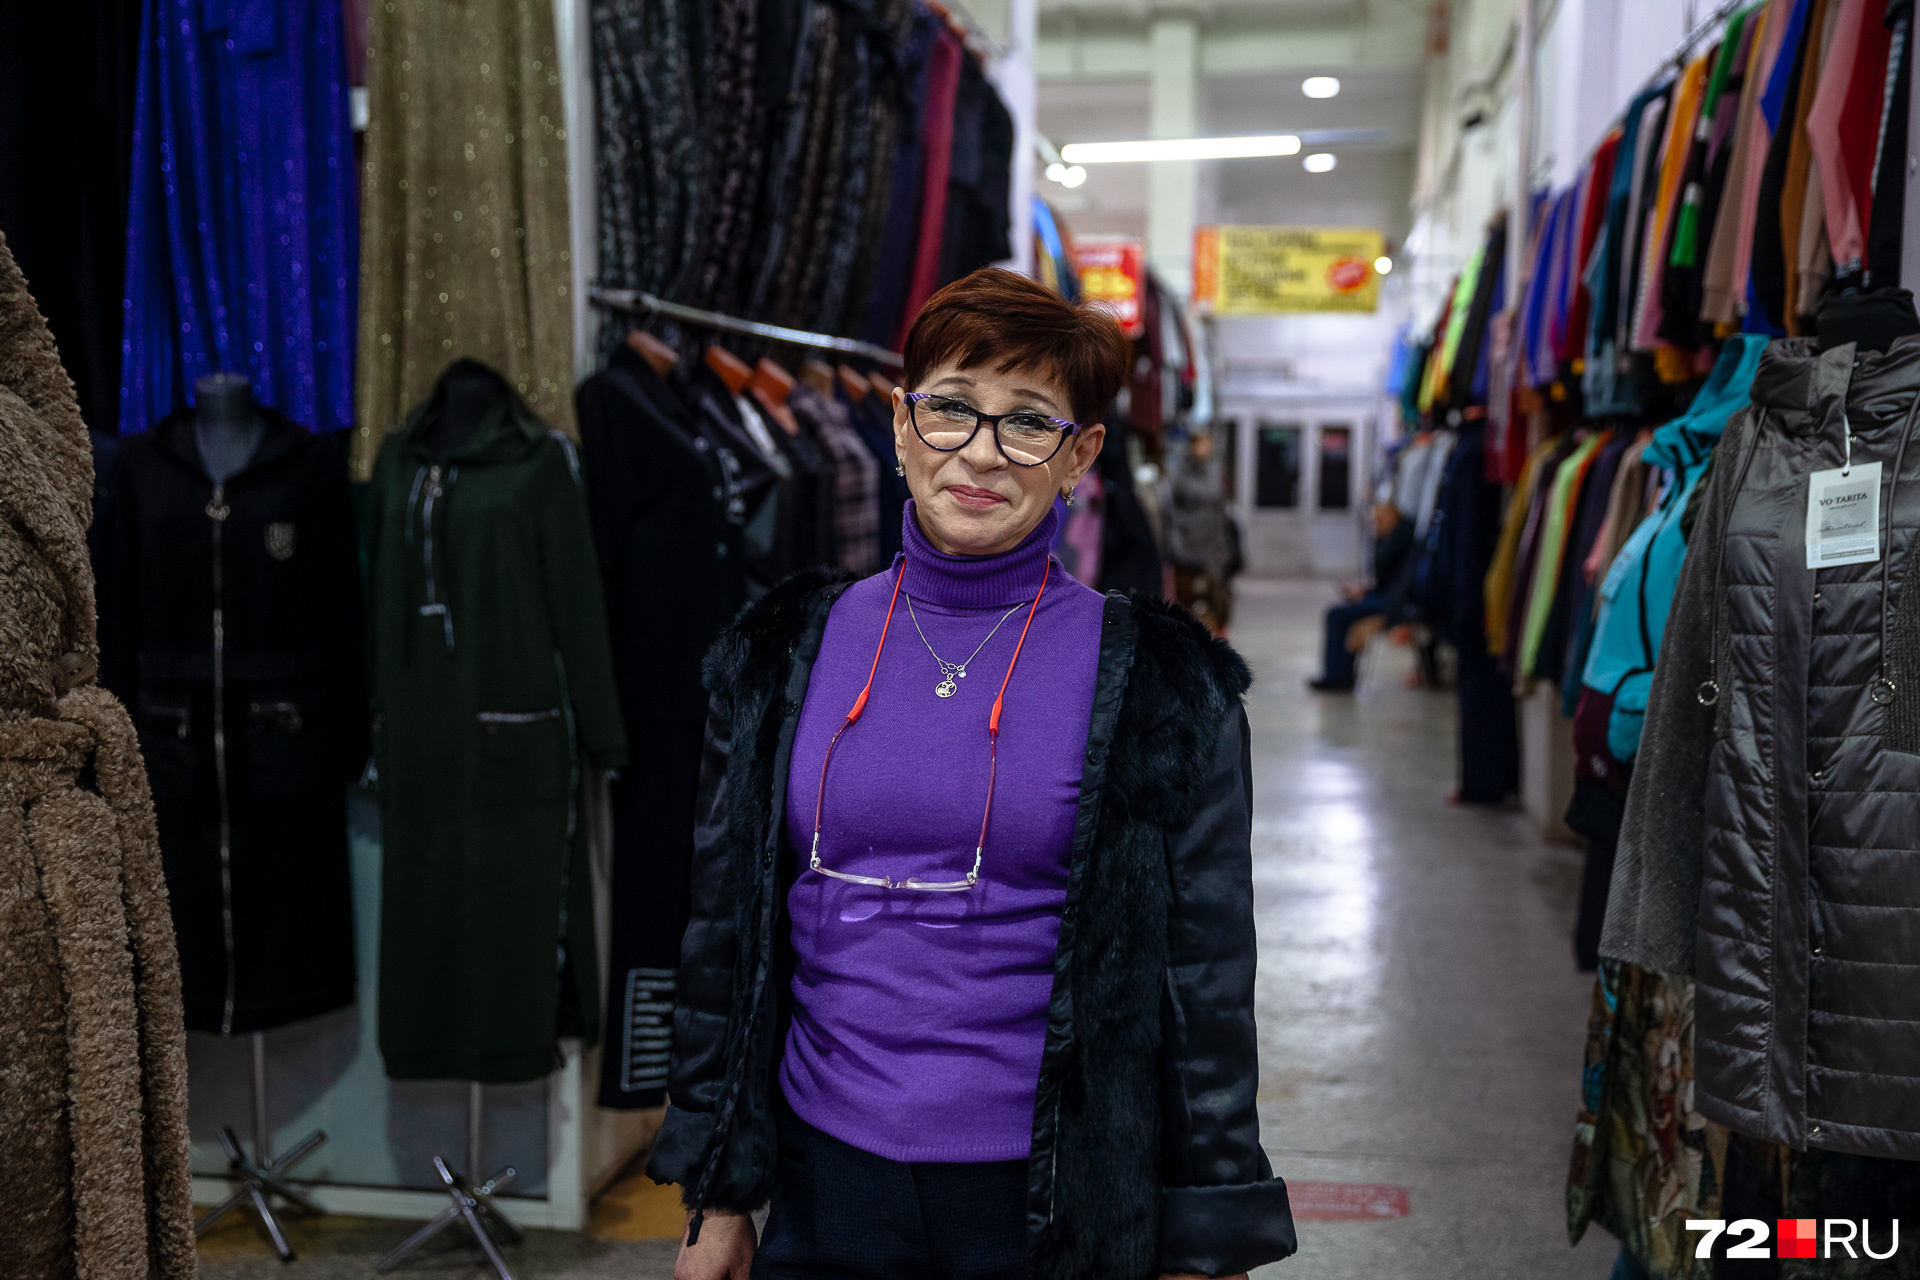 Луиза работает продавцом, и если ее магазин закроется, то она останется без работы